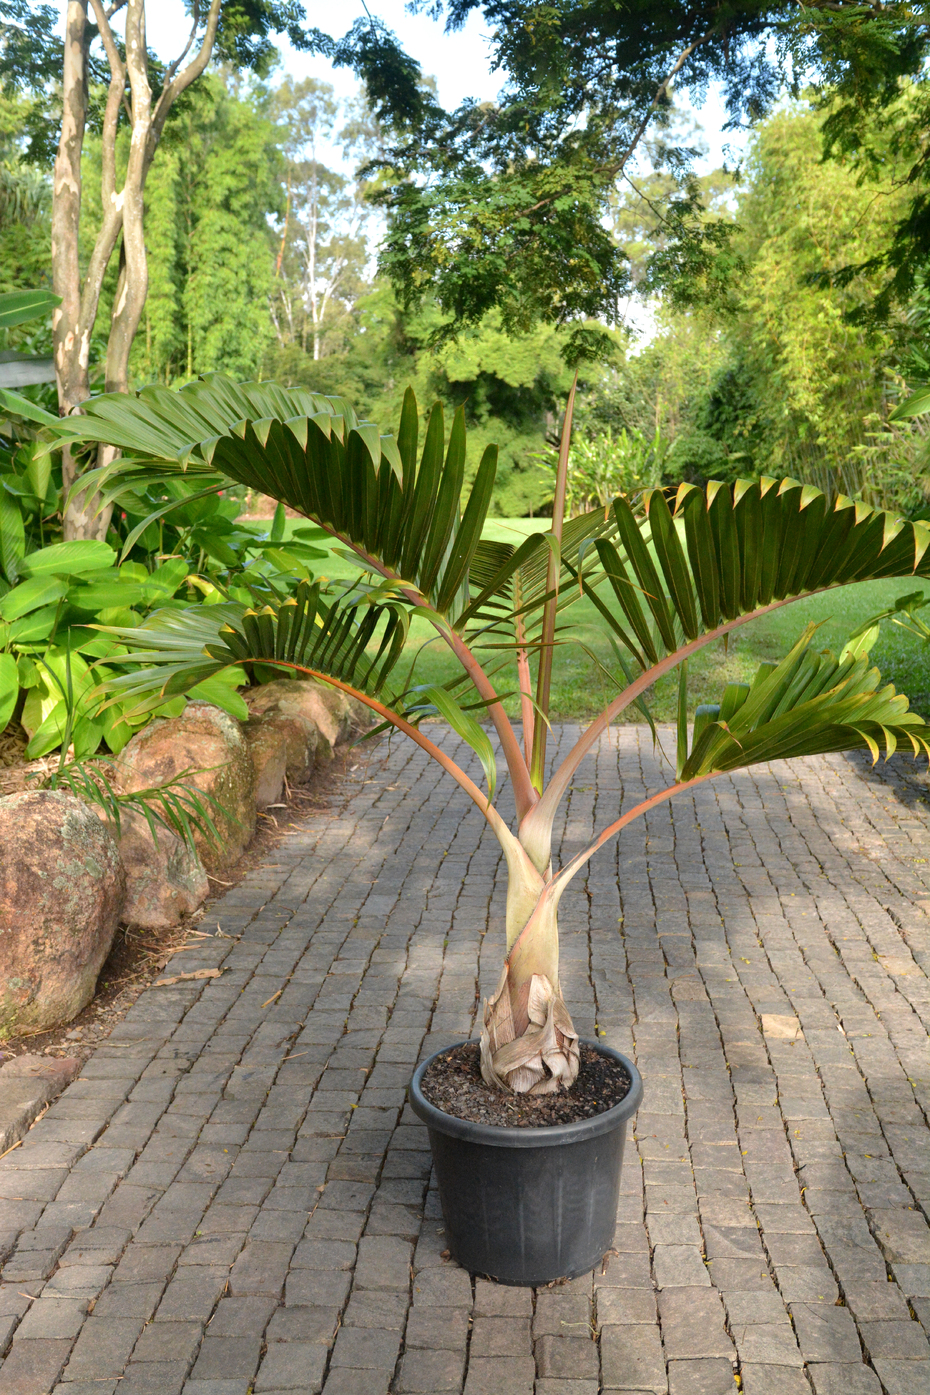 hyophorbe lagenicaulis (bottle palm)